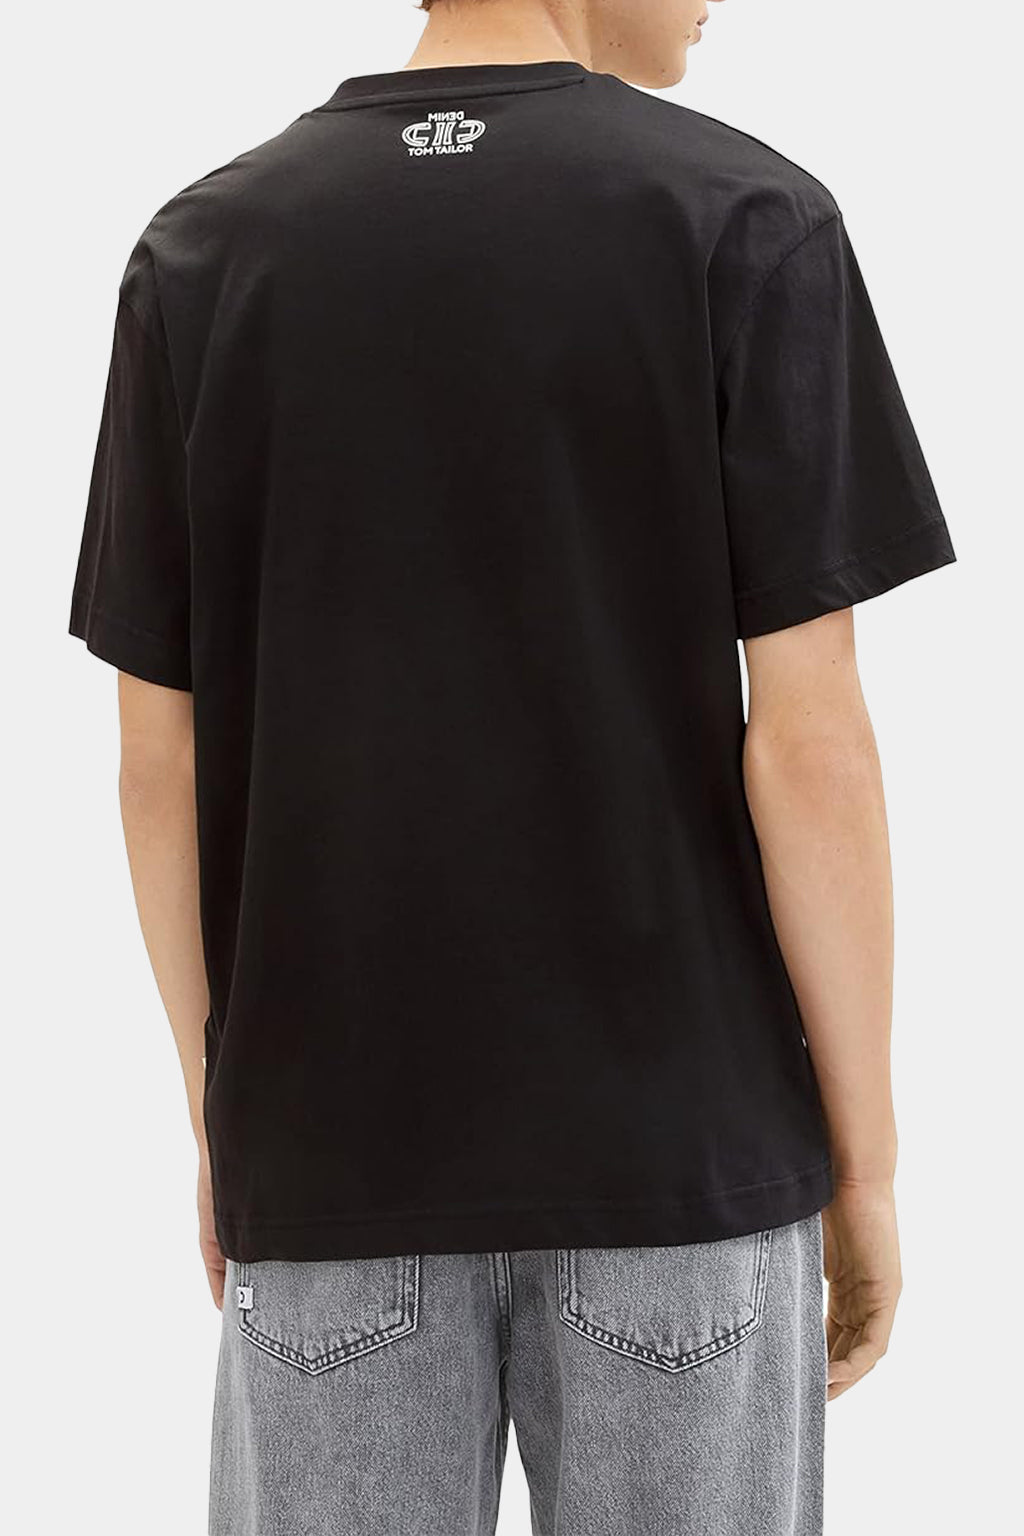 Tom Tailor - Denim Men's Relaxed Fit V-neck T-shirt